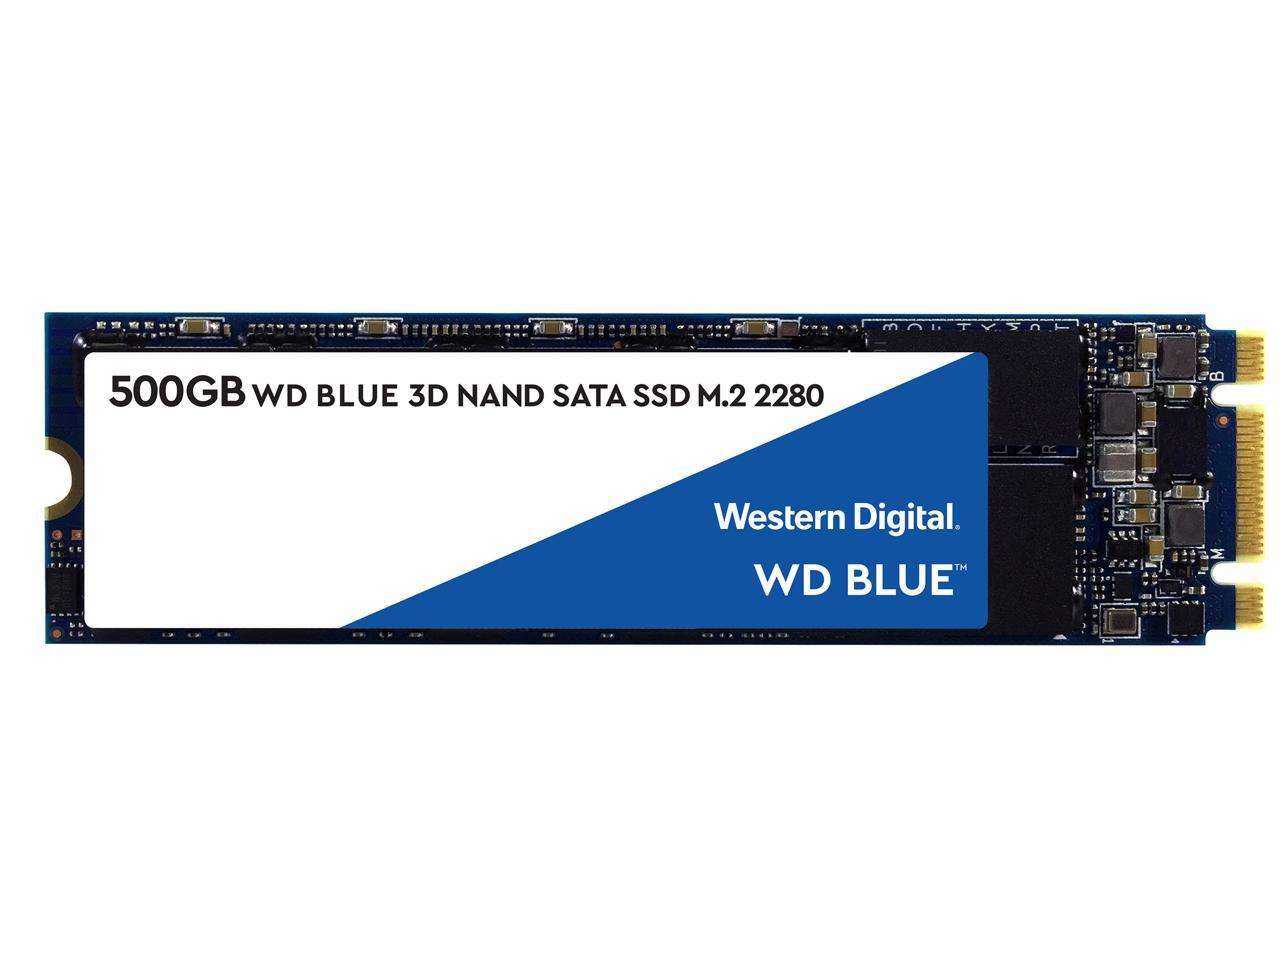 DISCO DURO SSD M.2 WESTERN DIGITAL BLUE 3D NAND 500GB